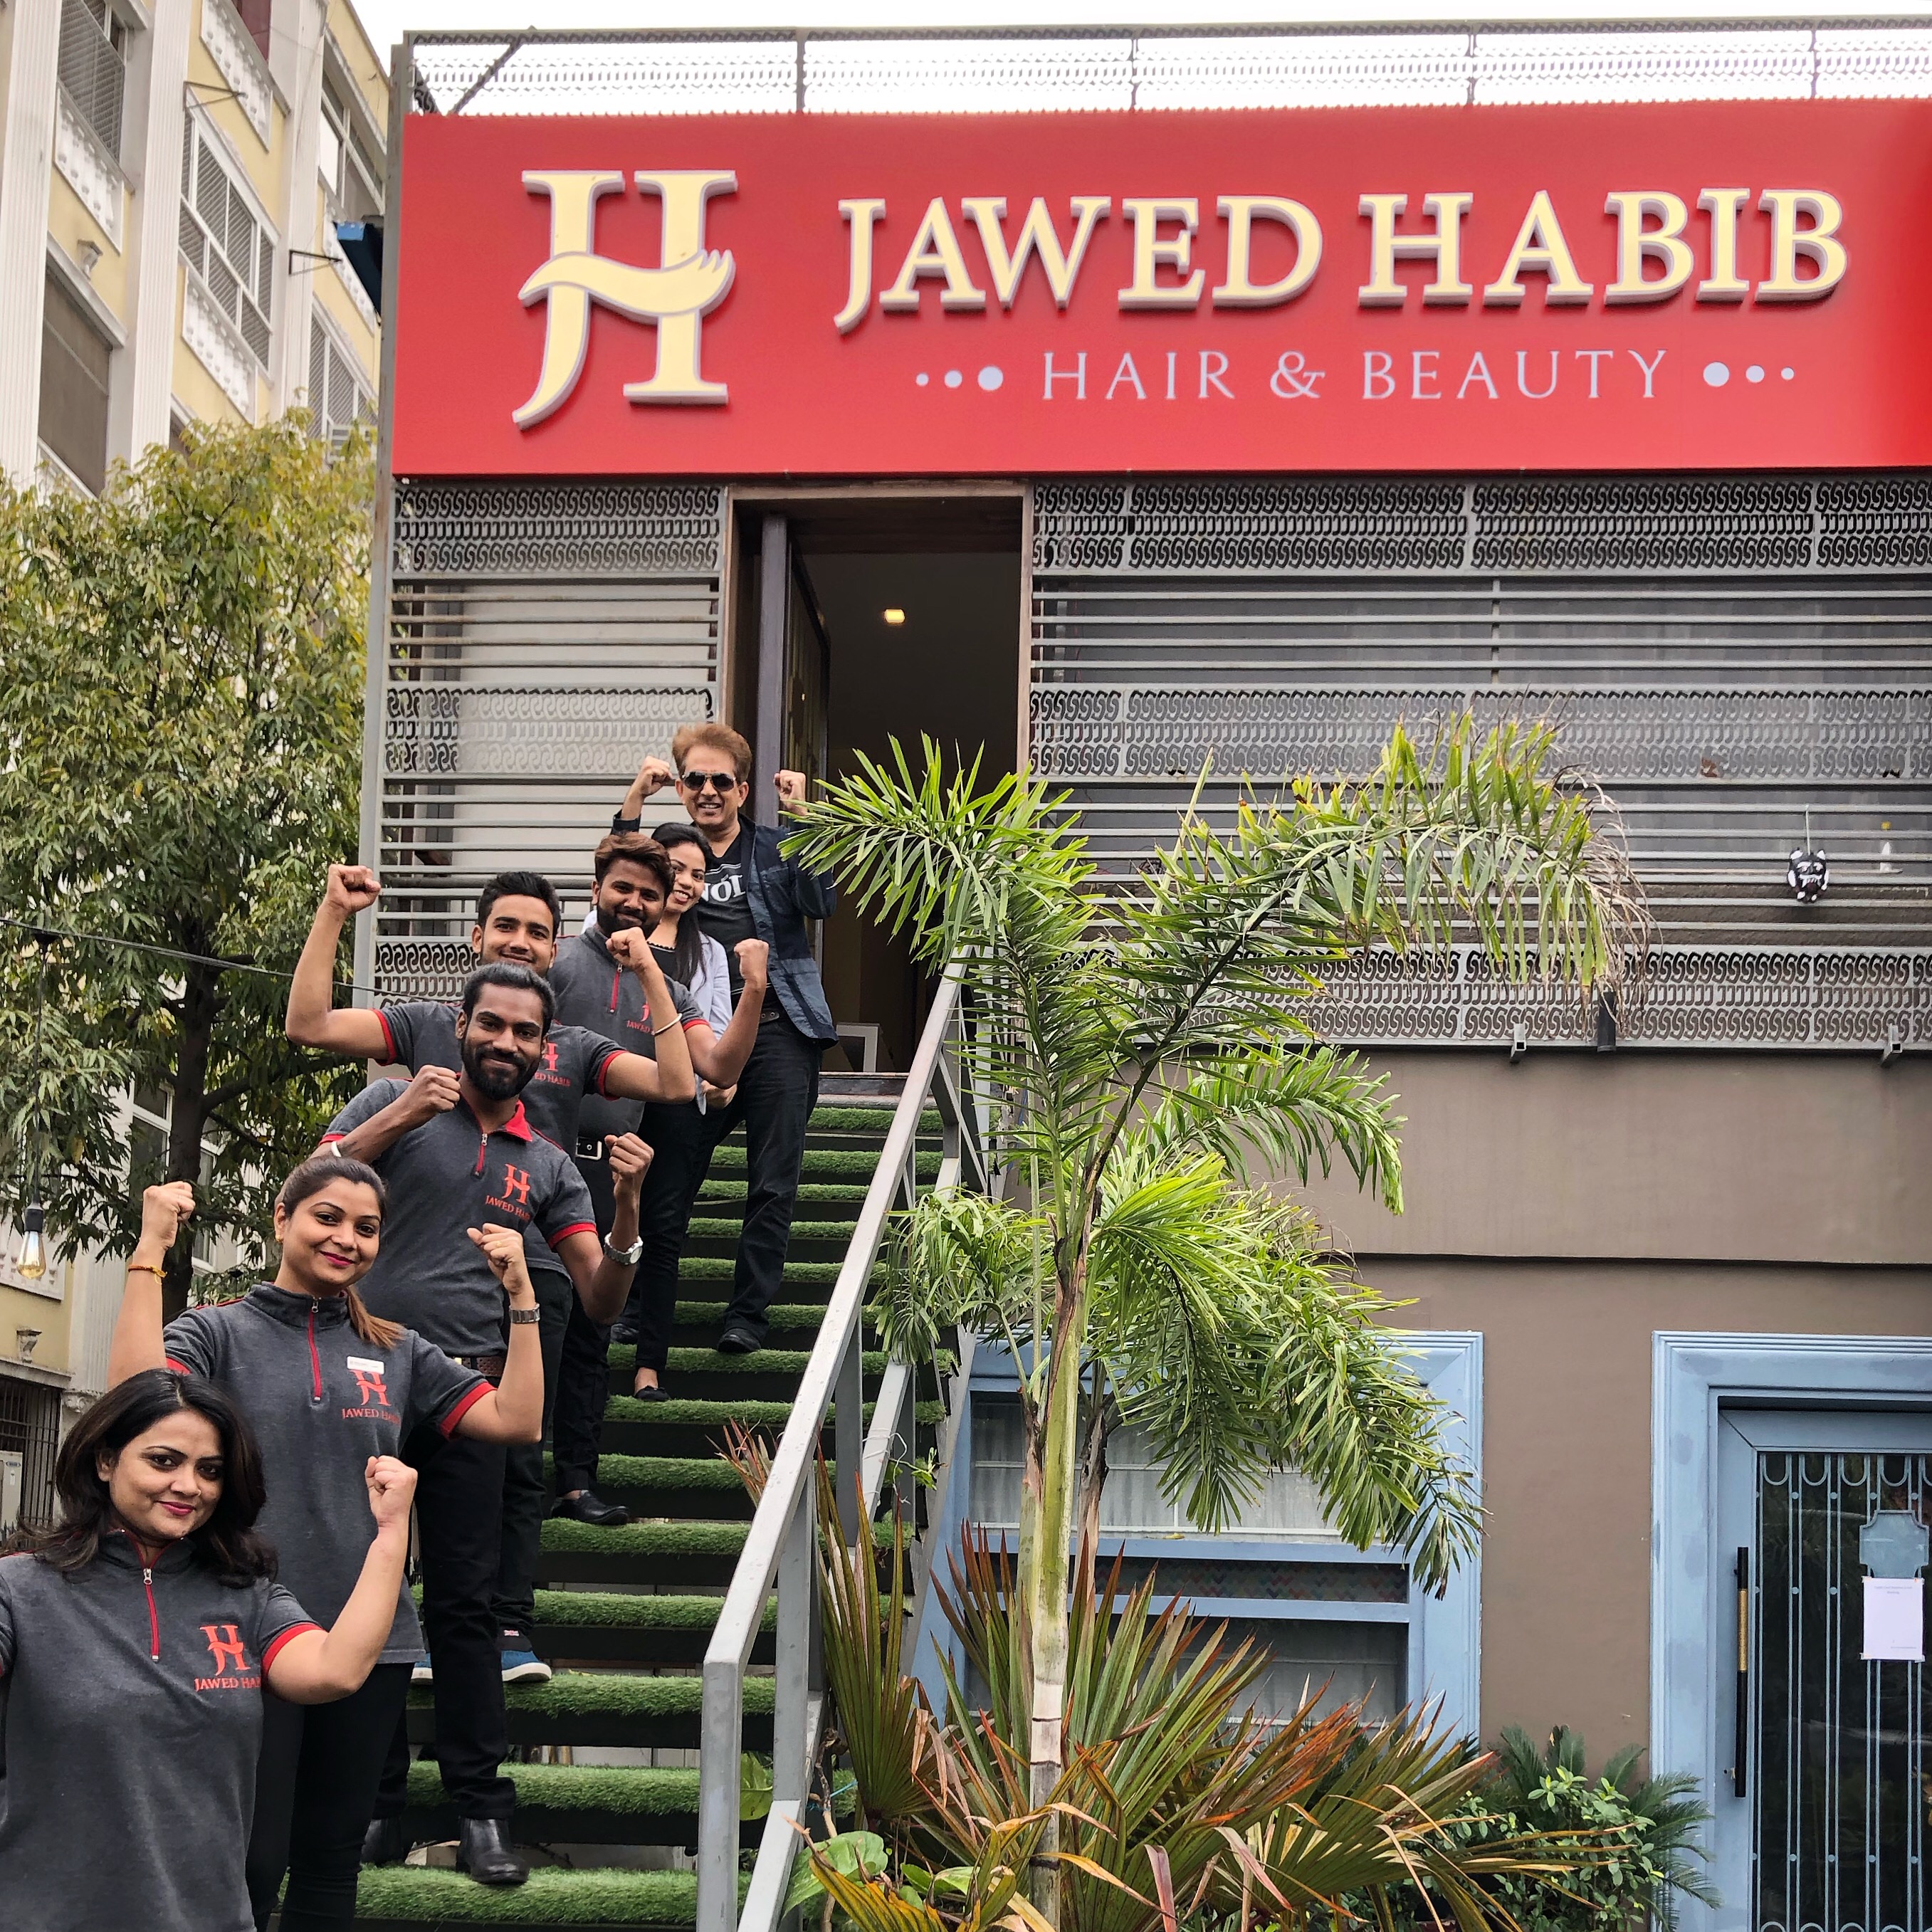 Jawed Habib Hair & Beauty in C Scheme, Jaipur-302001 | Sulekha Jaipur